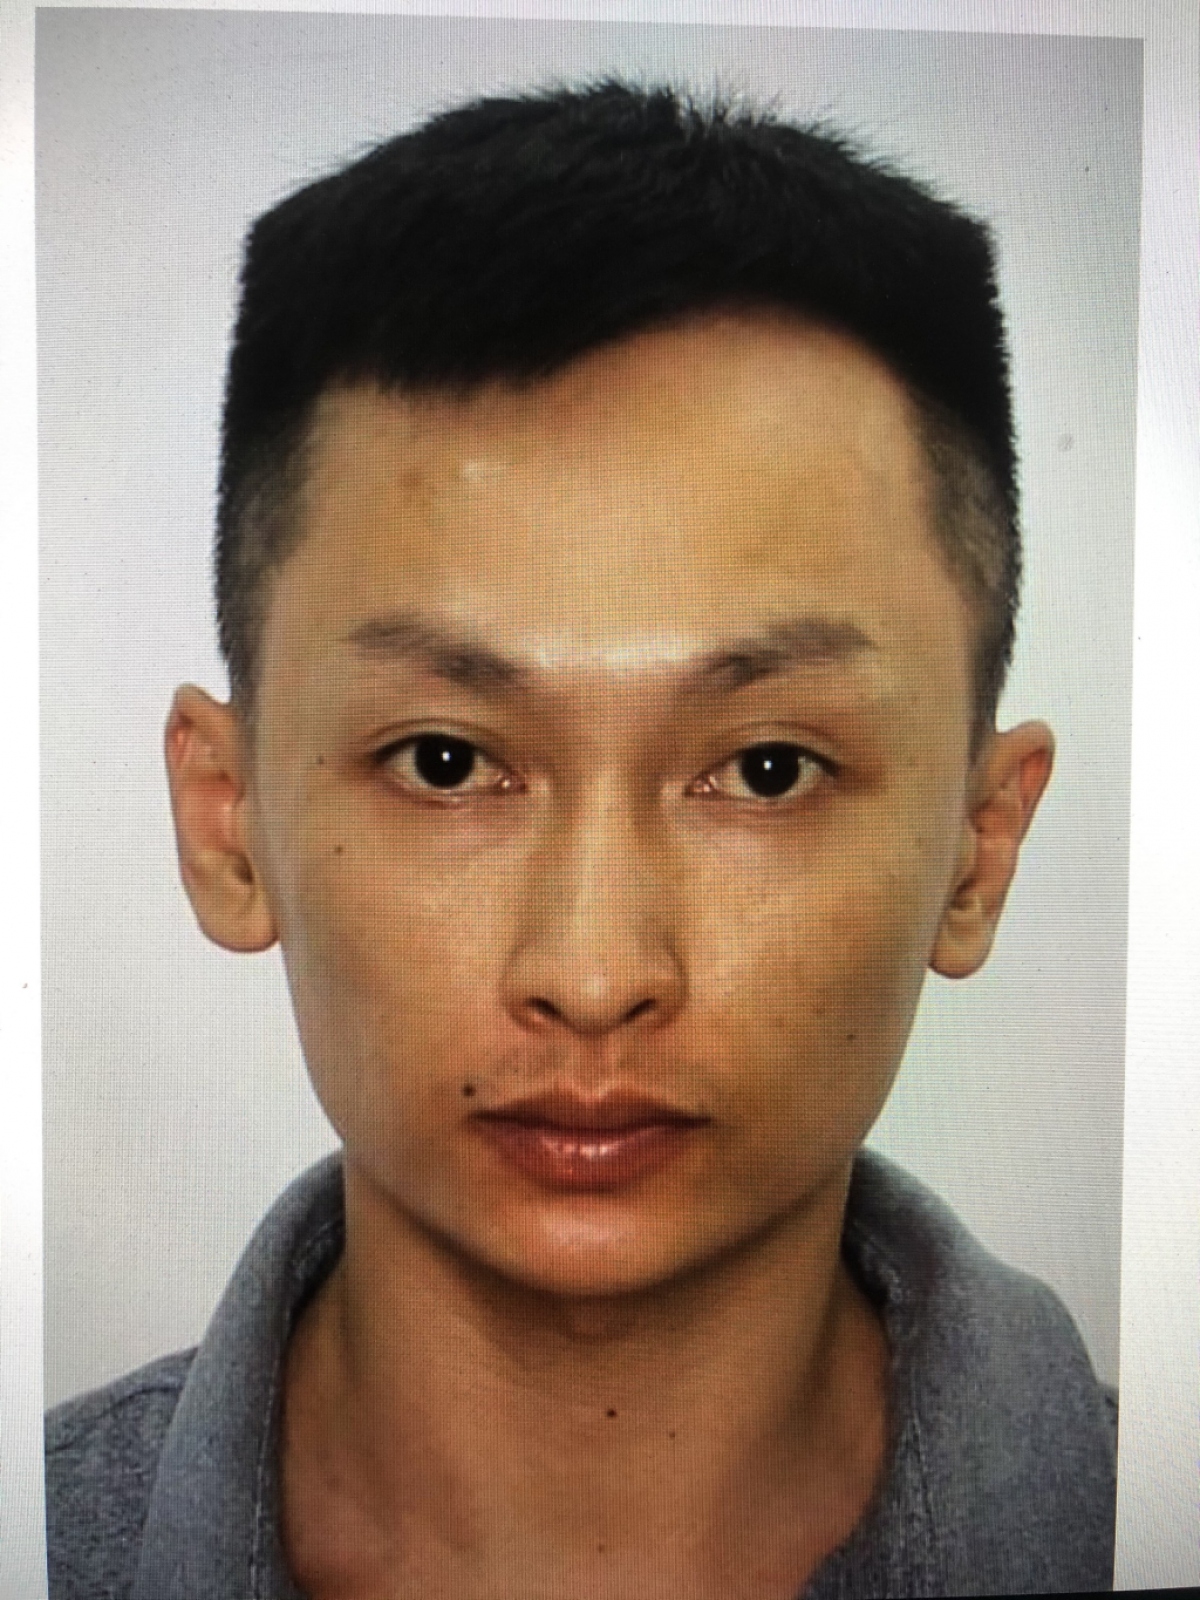 Quảng Ninh: Công an truy tìm nghi phạm gây án mạng tại khu vực quán Pud D.O.M Loughe ở Đông Triều - Ảnh 2.